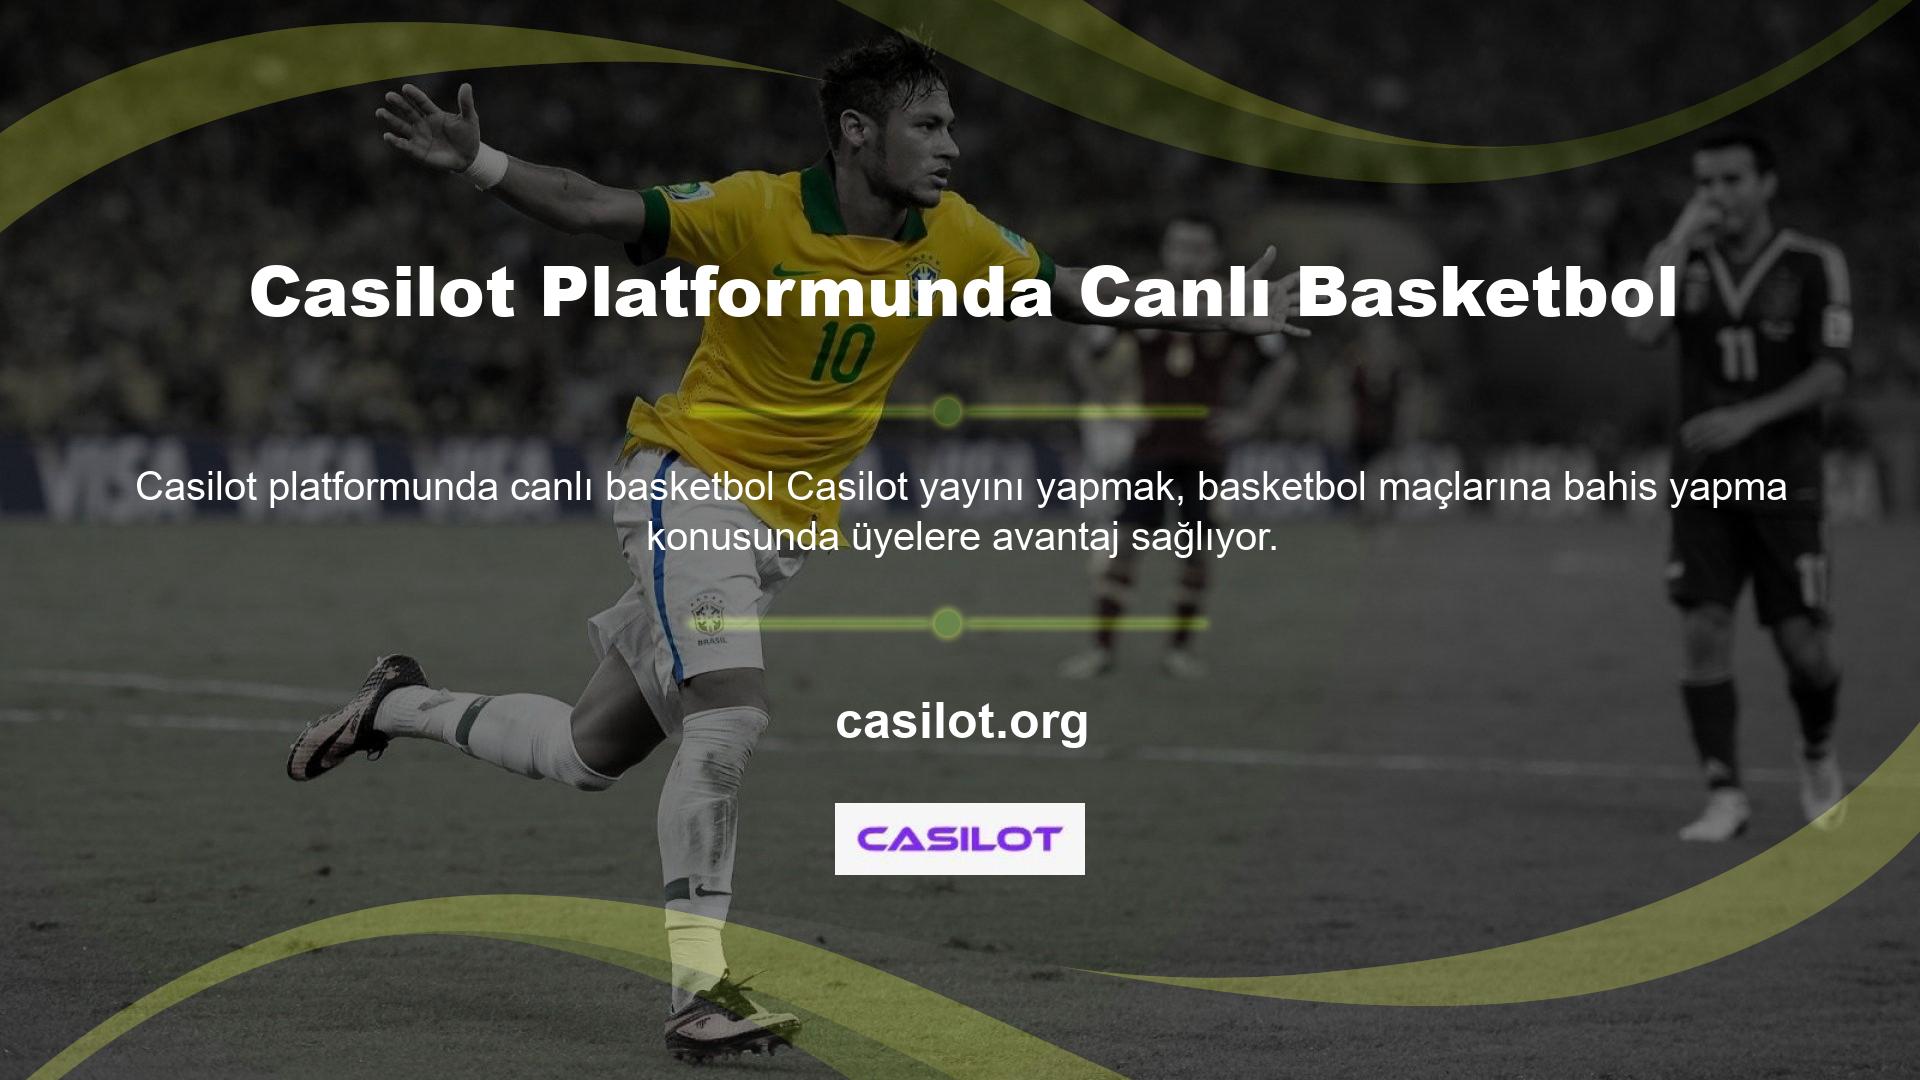 Casilot sitesi hem basketbol hem de bahis bahisleri için canlı yayınlar sağlama açısından çok önemlidir